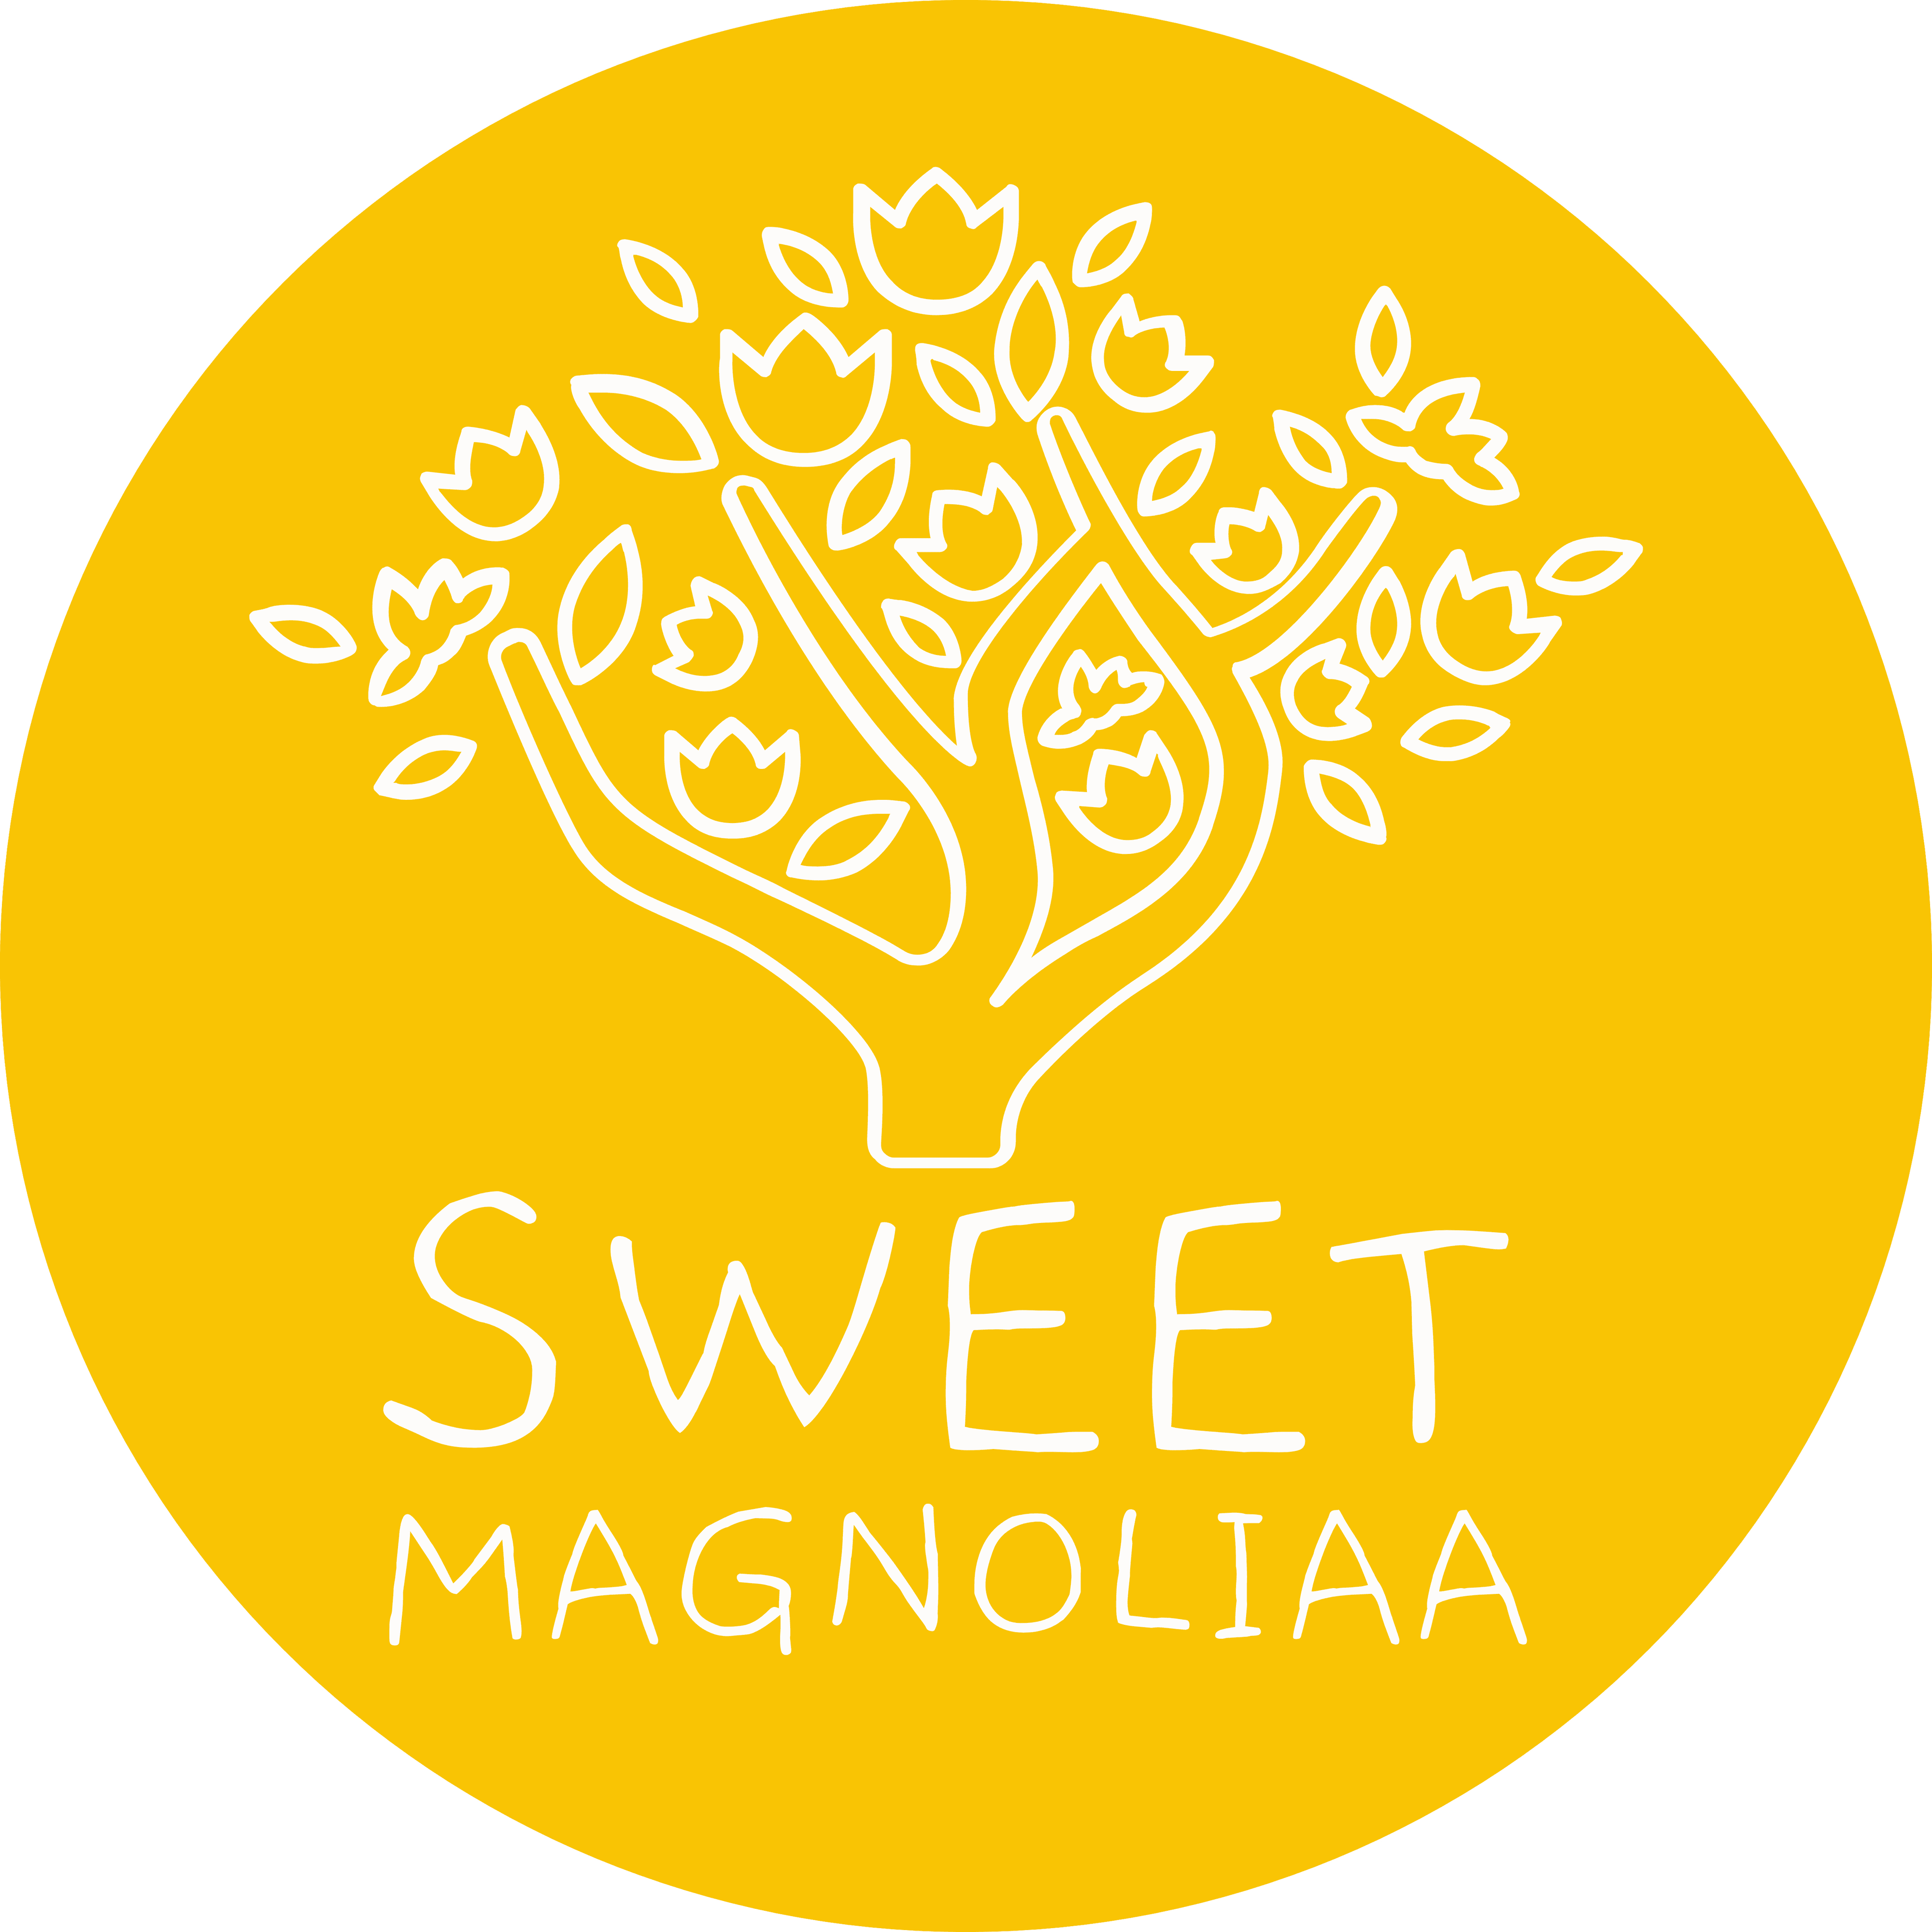 SweetMagnoliaa